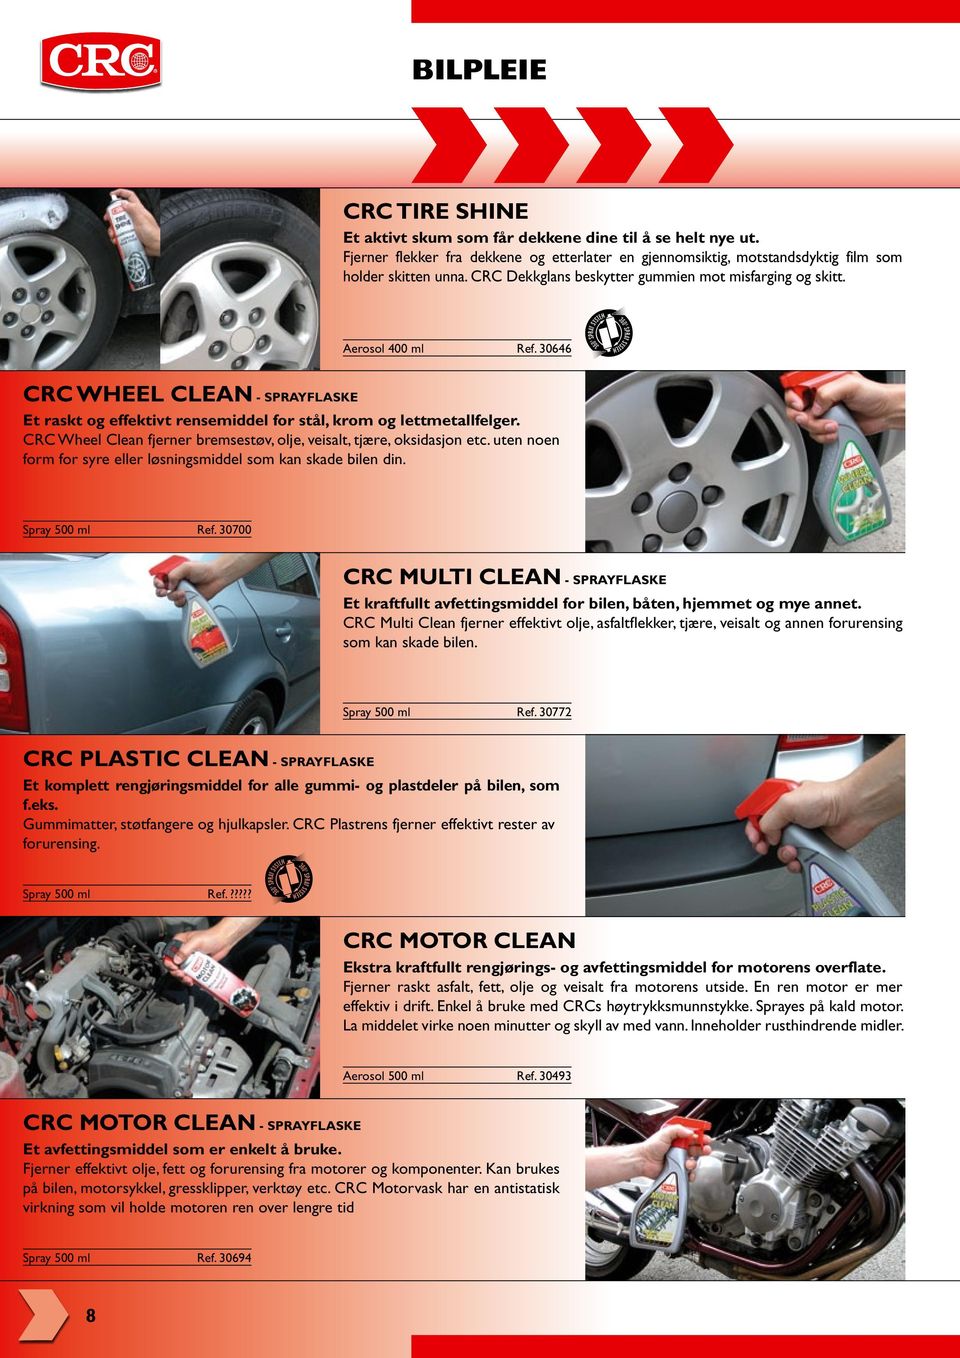 CRC Wheel Clean fjerner bremsestøv, olje, veisalt, tjære, oksidasjon etc. uten noen form for syre eller løsningsmiddel som kan skade bilen din. Spray 500 ml Ref.